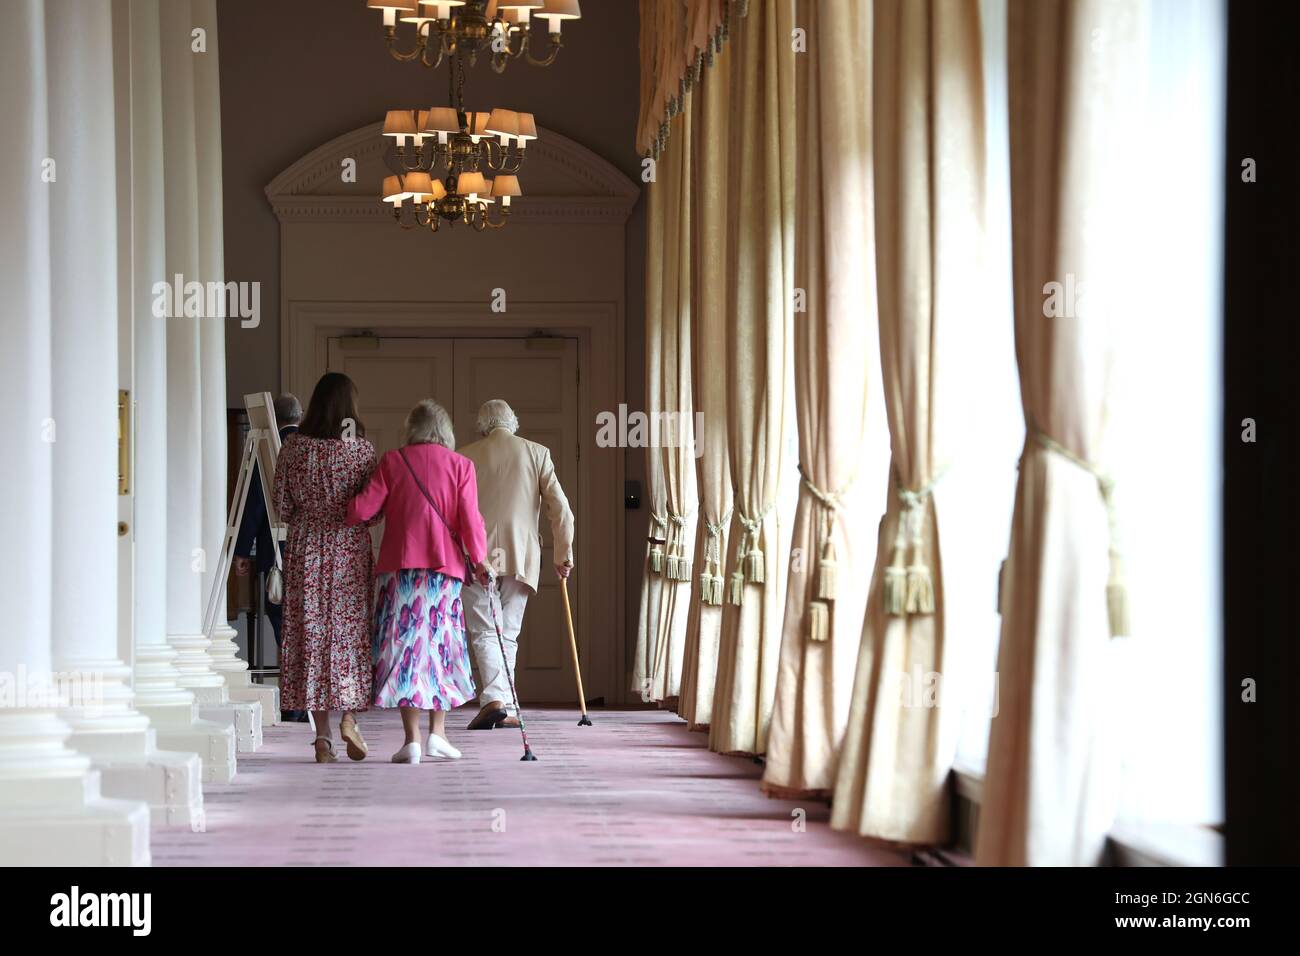 Deux générations d'une famille photographiée se promenant ensemble dans un hôtel d'Eastbourne, East Sussex, Royaume-Uni. Banque D'Images